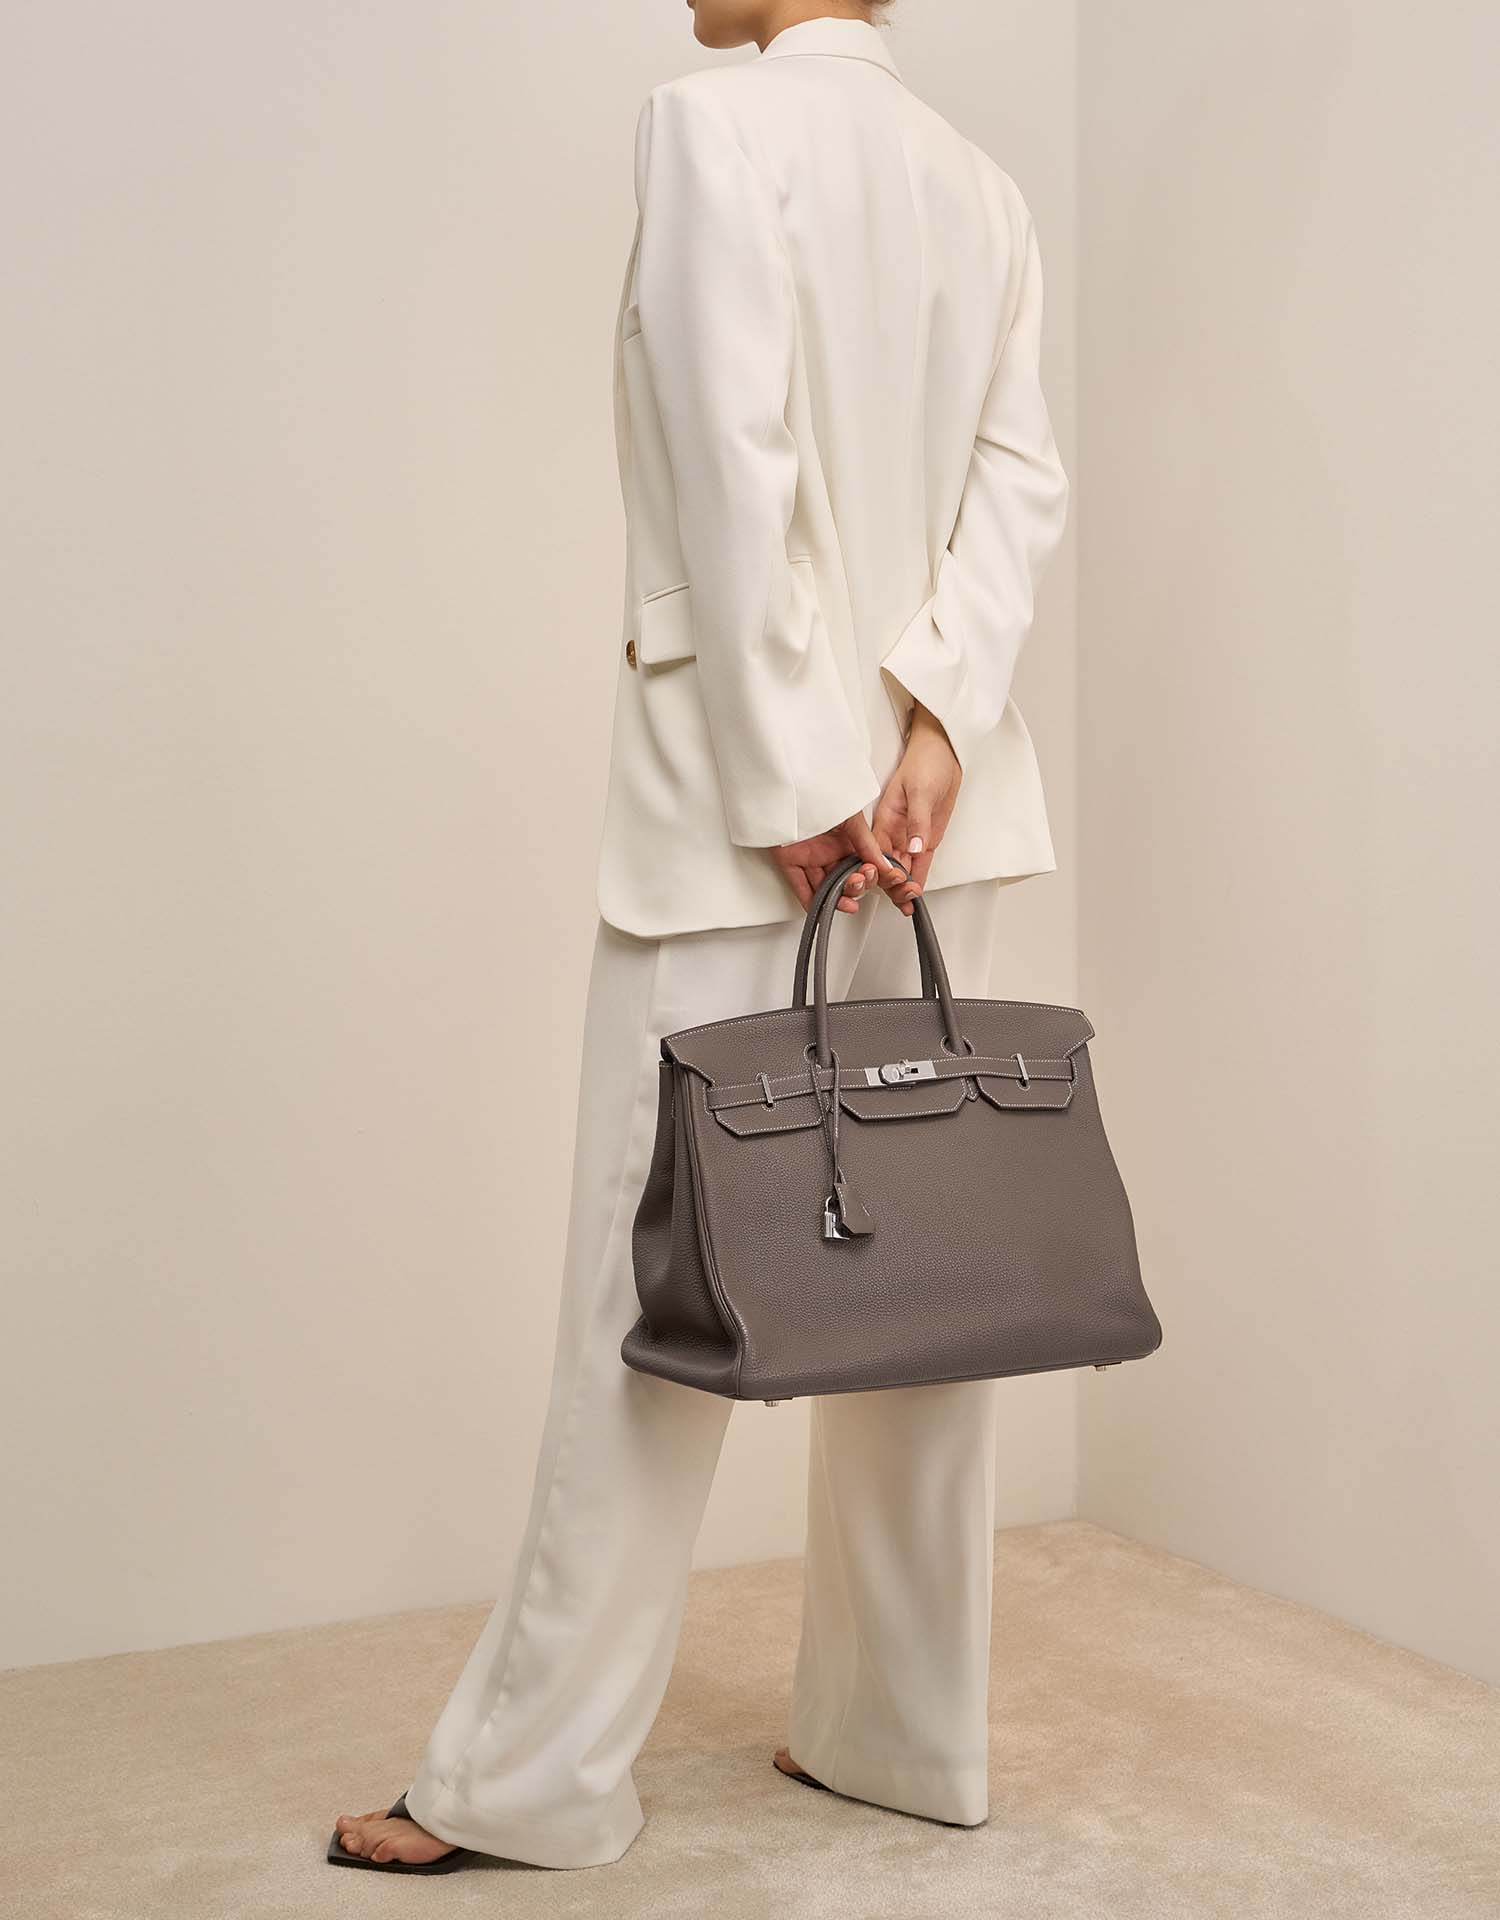 Hermès Birkin 40 Etoupe auf Model | Verkaufen Sie Ihre Designertasche auf Saclab.com